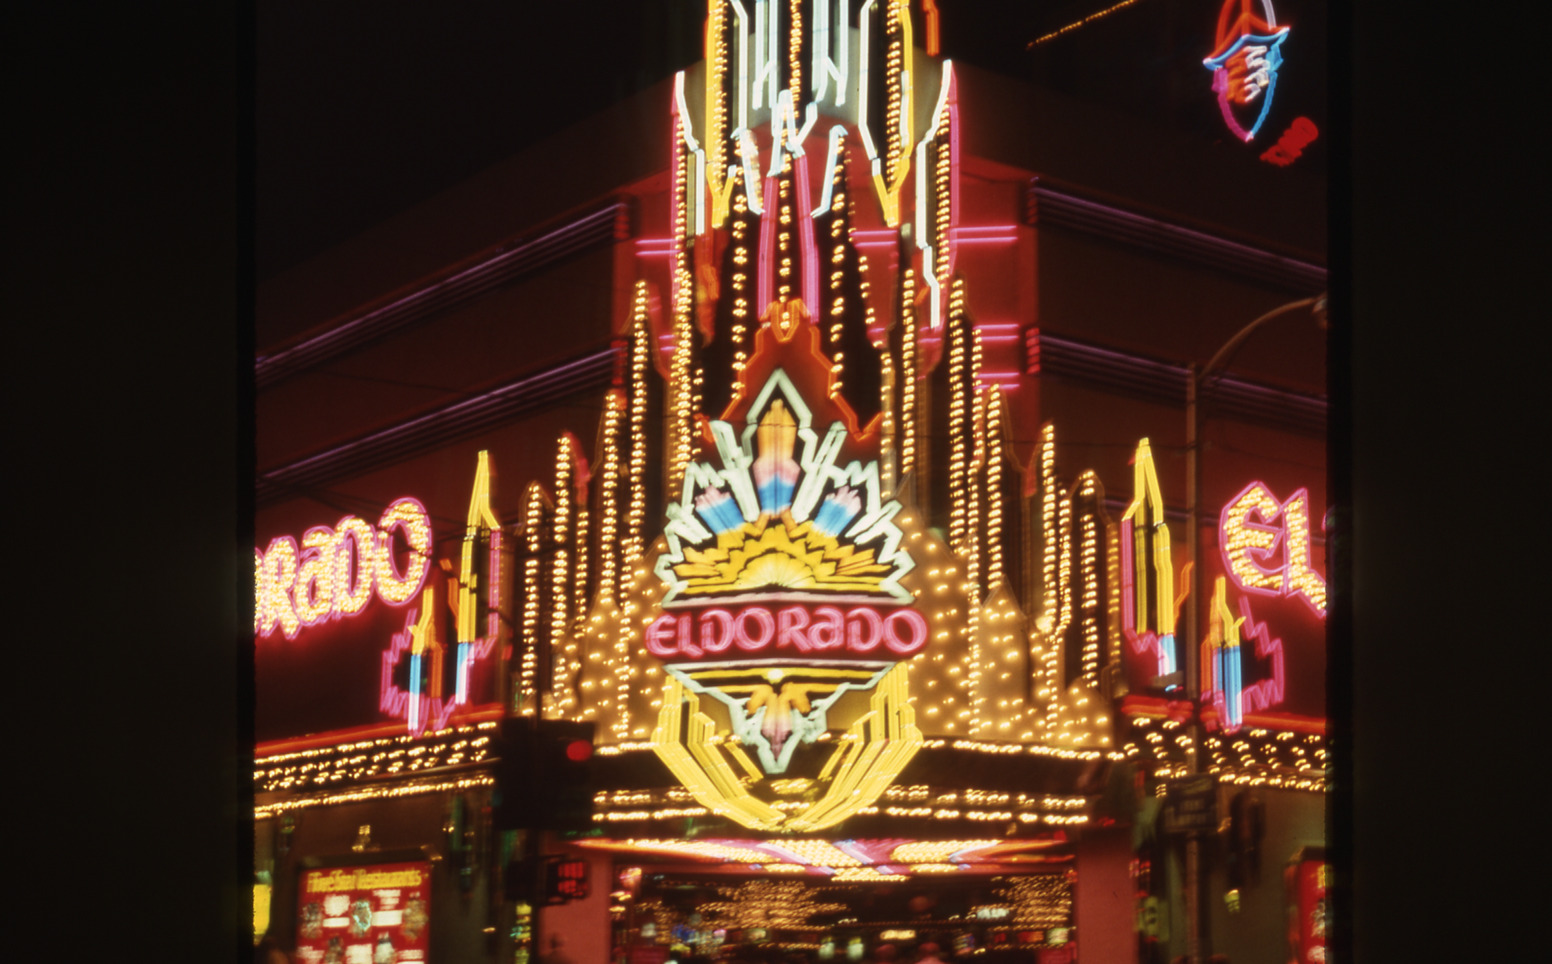 El Dorado marquee sign, Reno, Nevada: photographic print